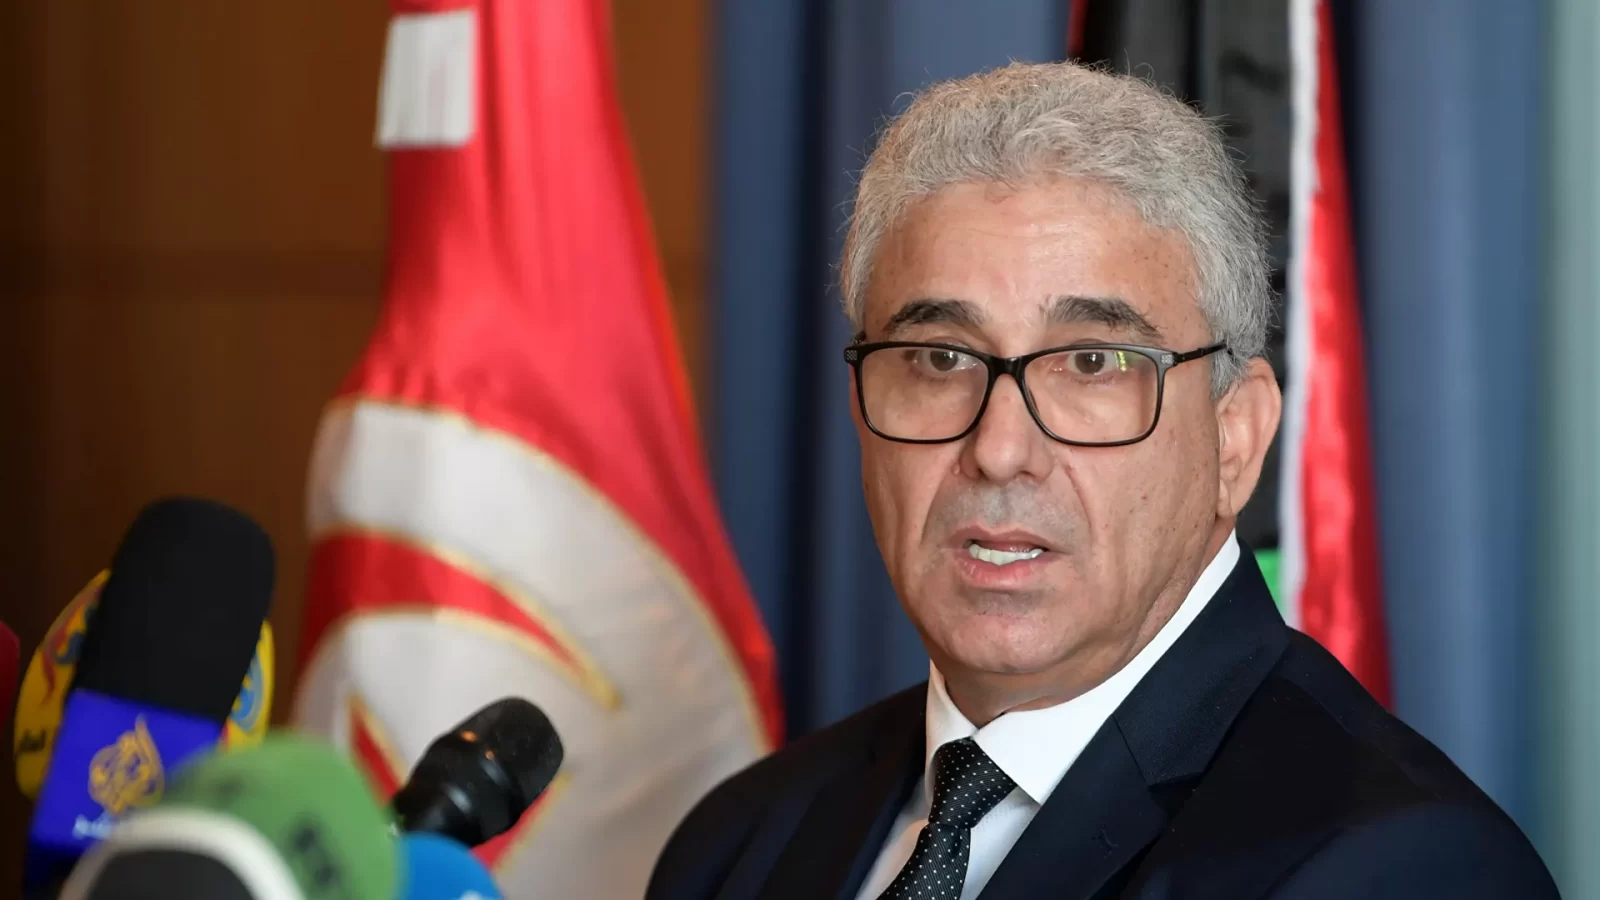 ليبيا/ وزير الاقتصاد في حكومة باشاغا يستقيل قبل مباشرة مهامه